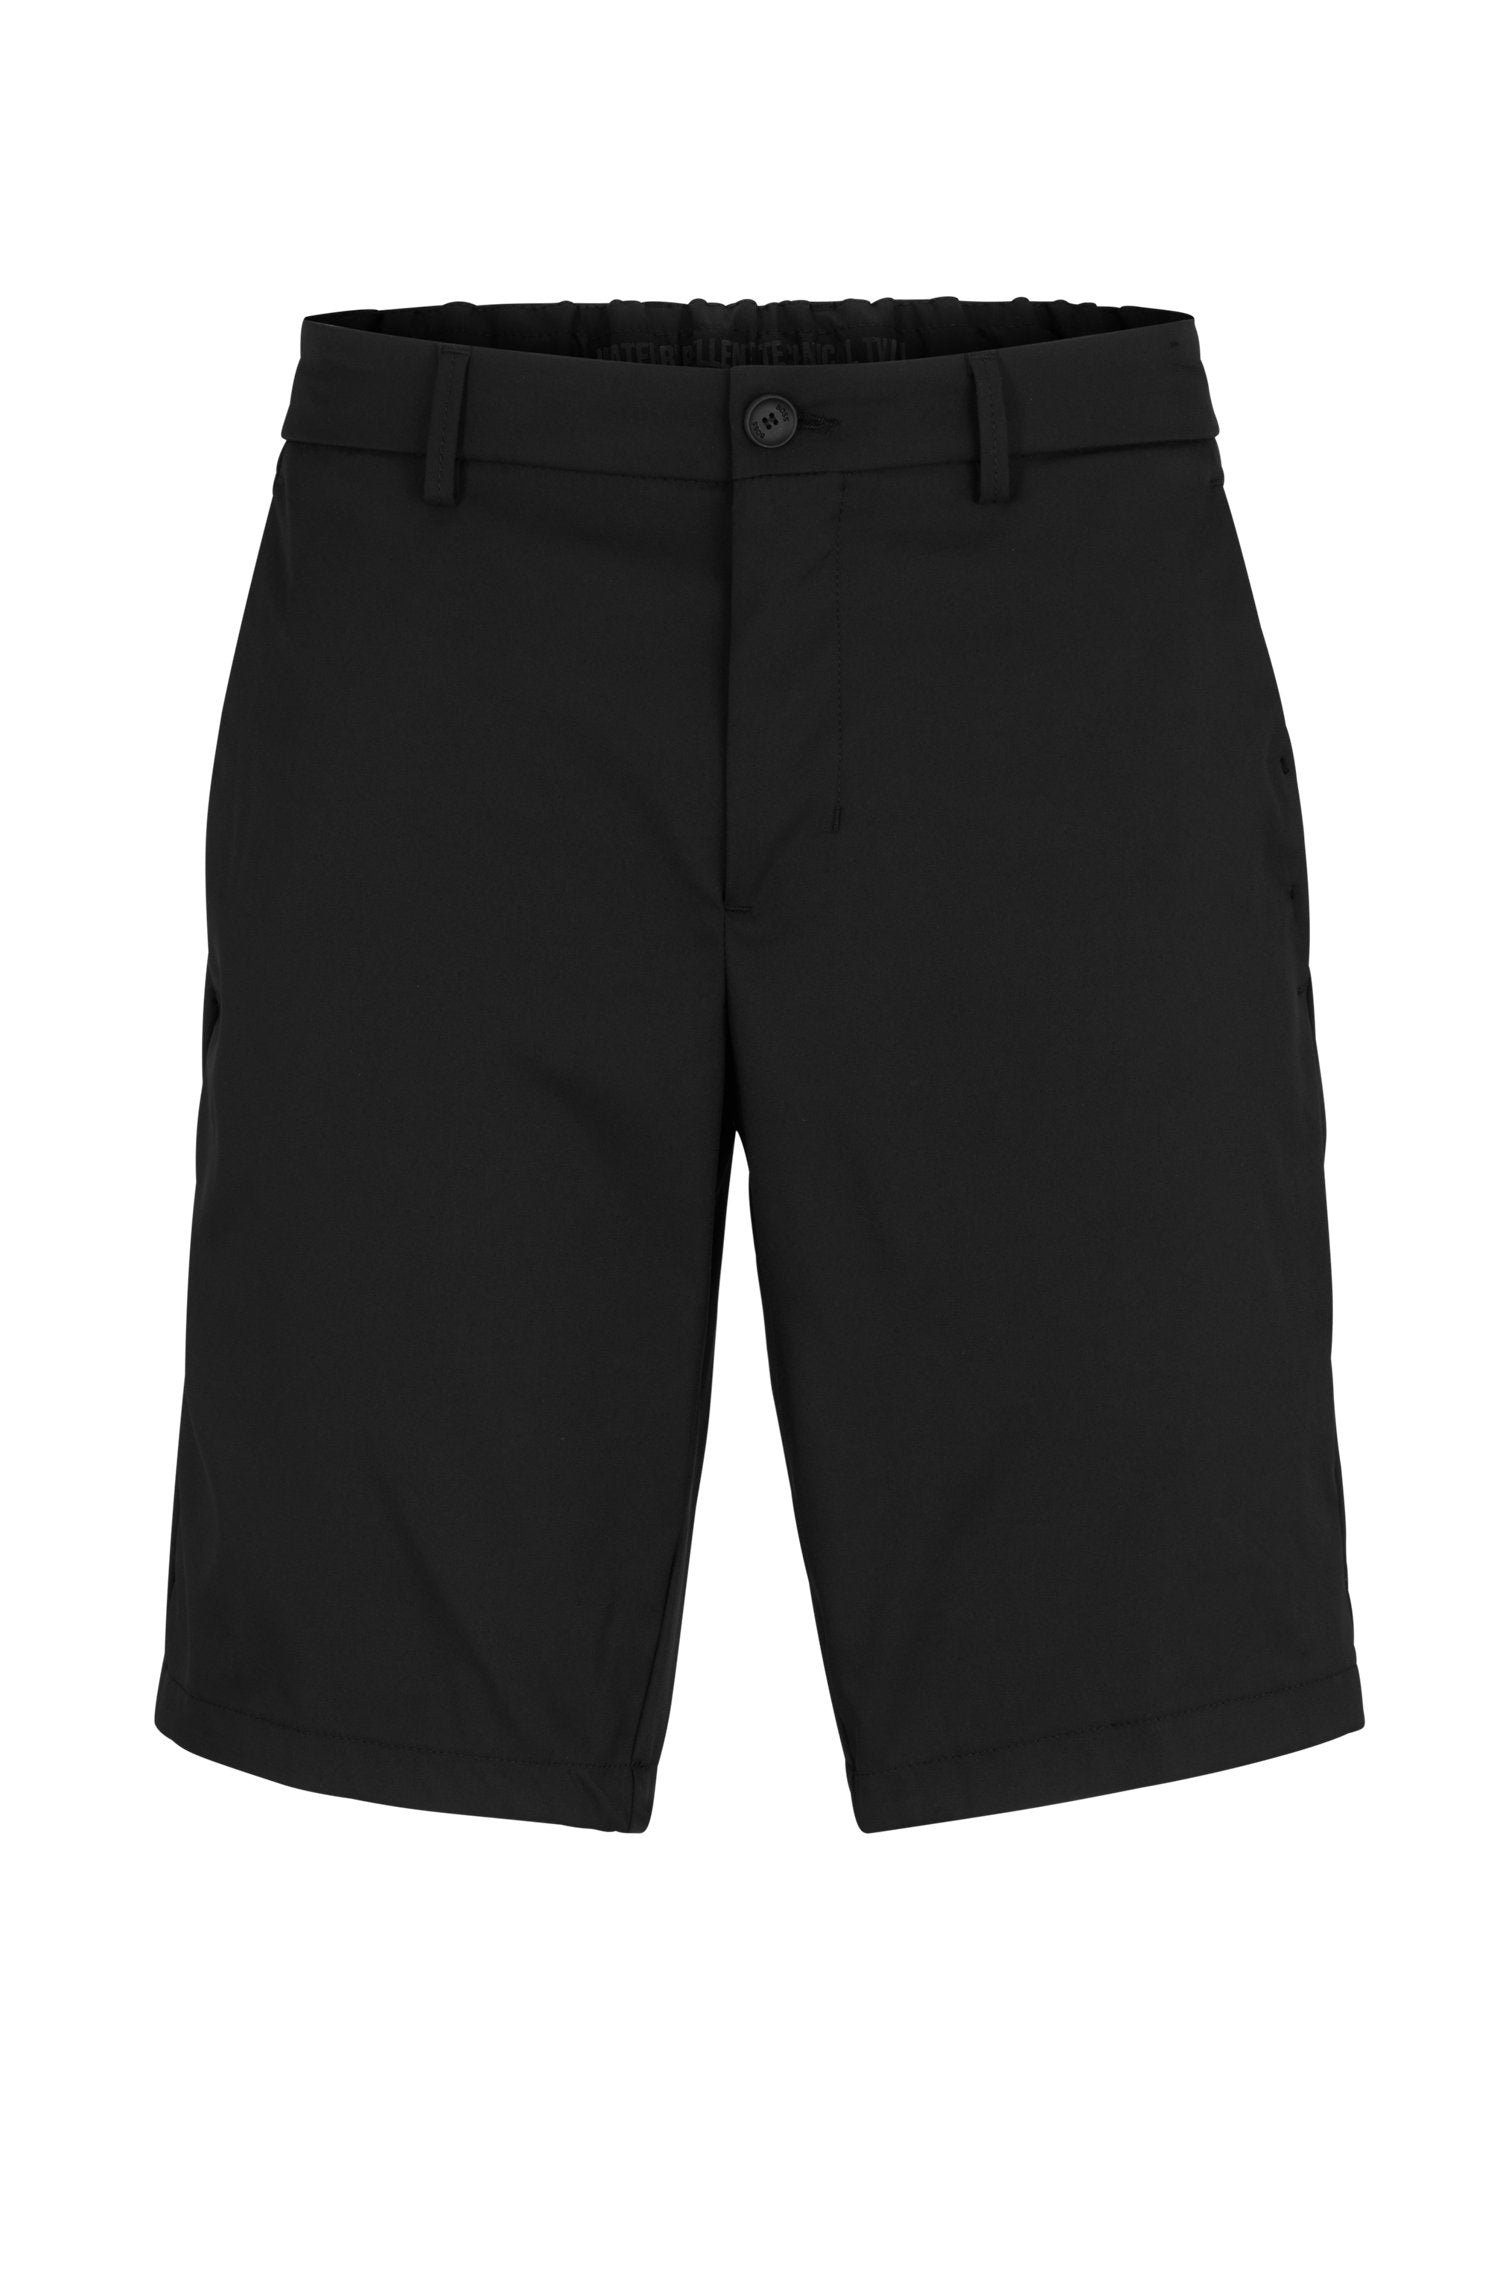 Hugo Boss S-Drax Shorts